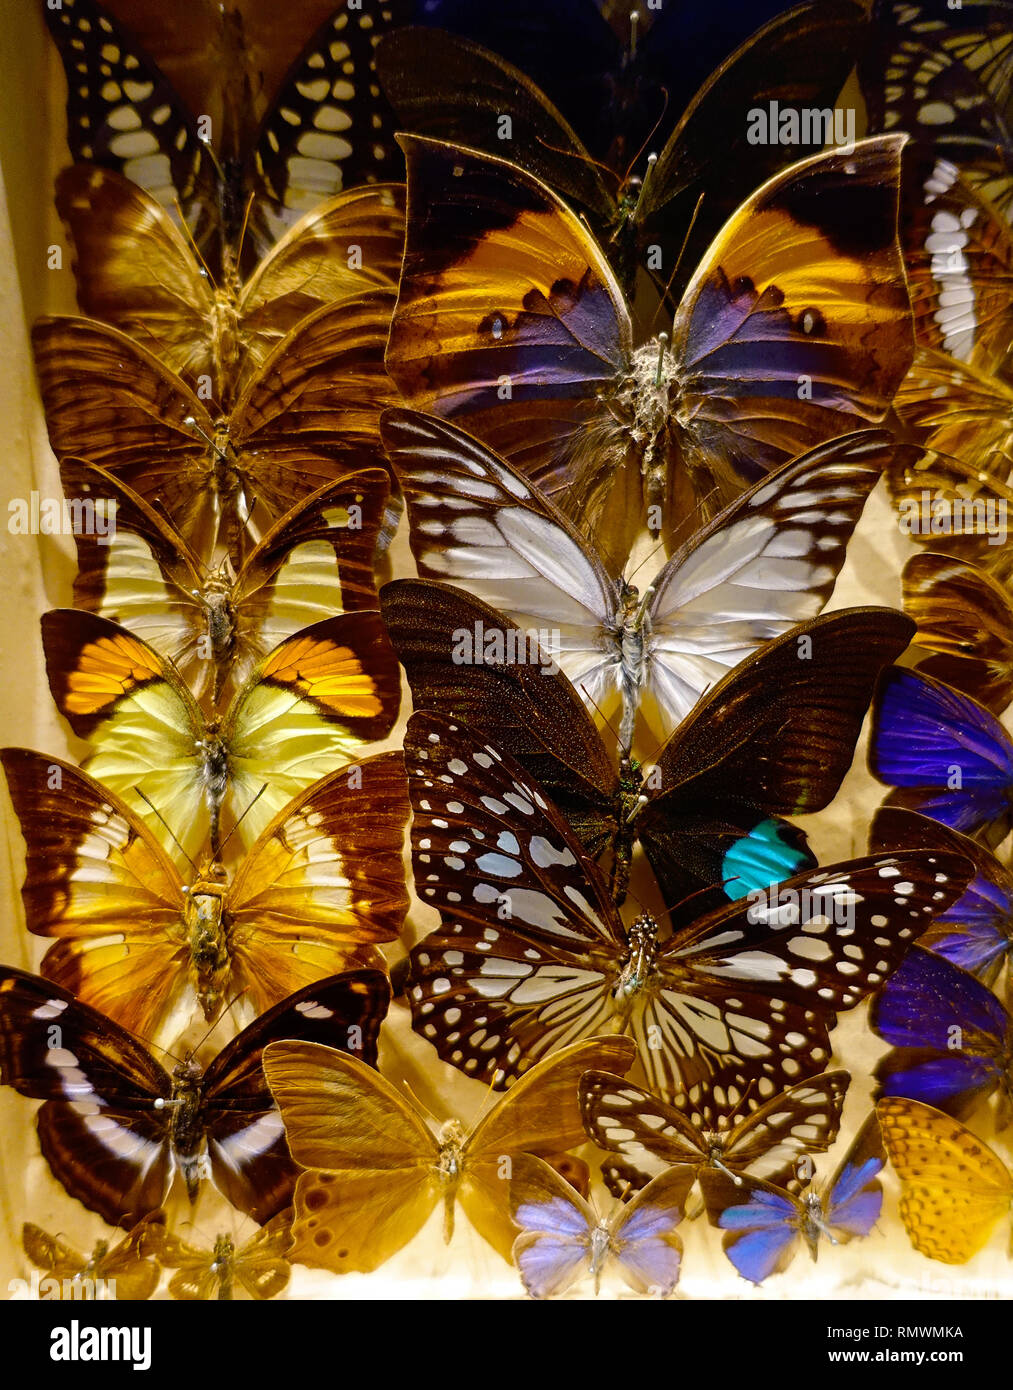 Collection de papillons Banque D'Images